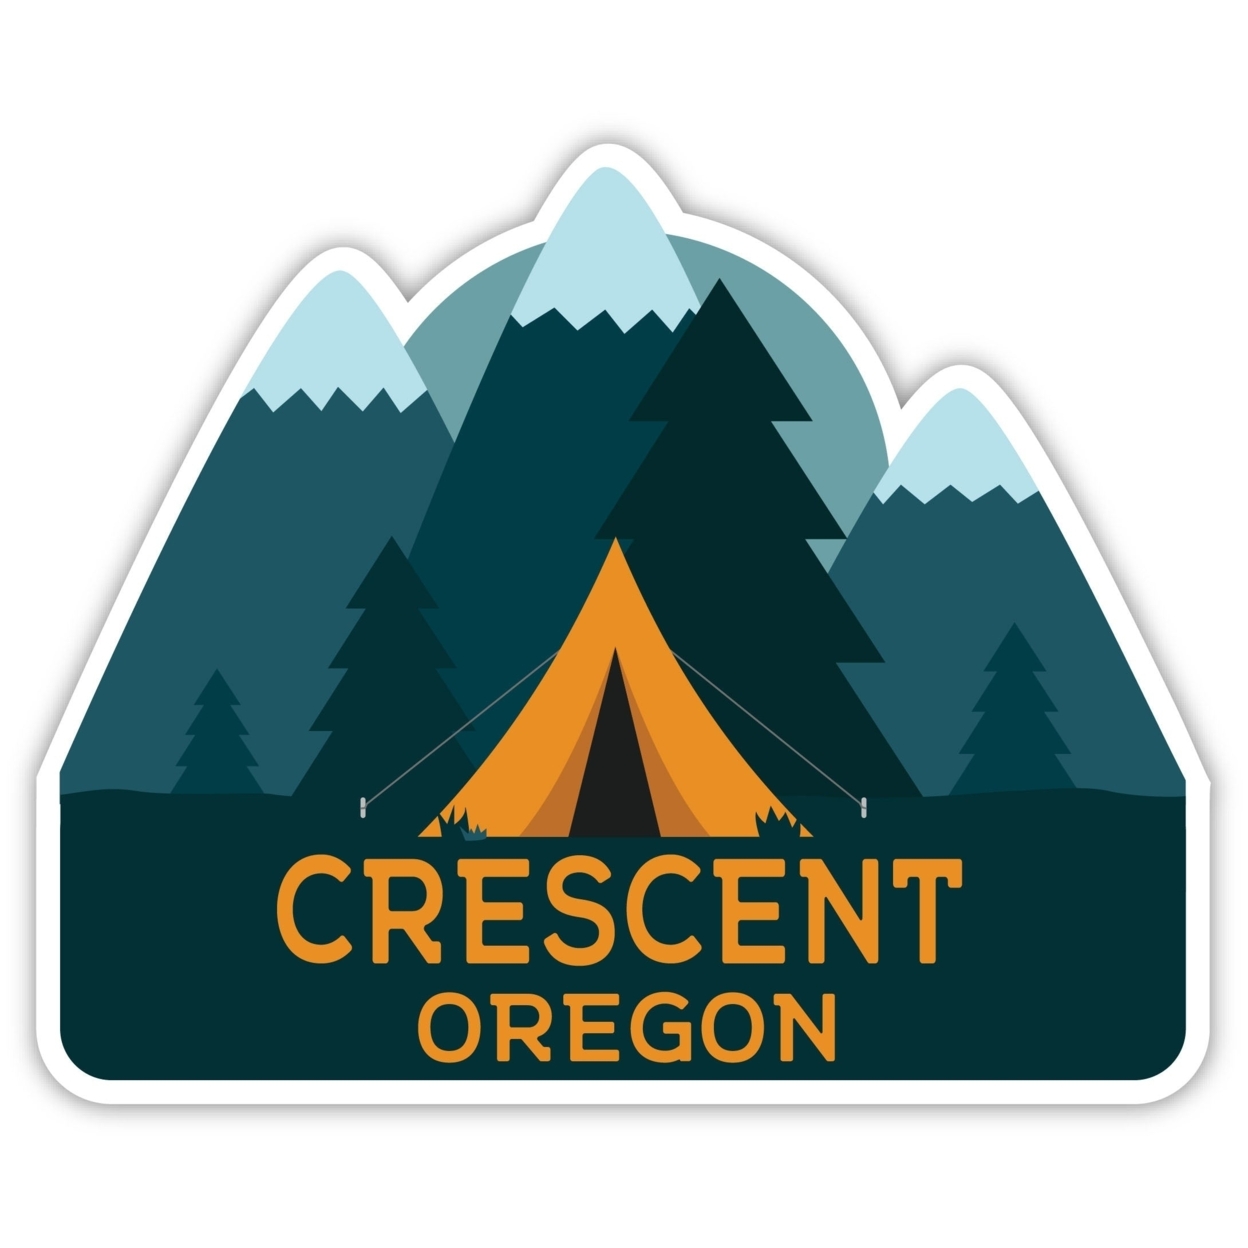 Crescent Oregon Souvenir Decorative Stickers (Choose Theme And Size) - Single Unit, 2-Inch, Tent